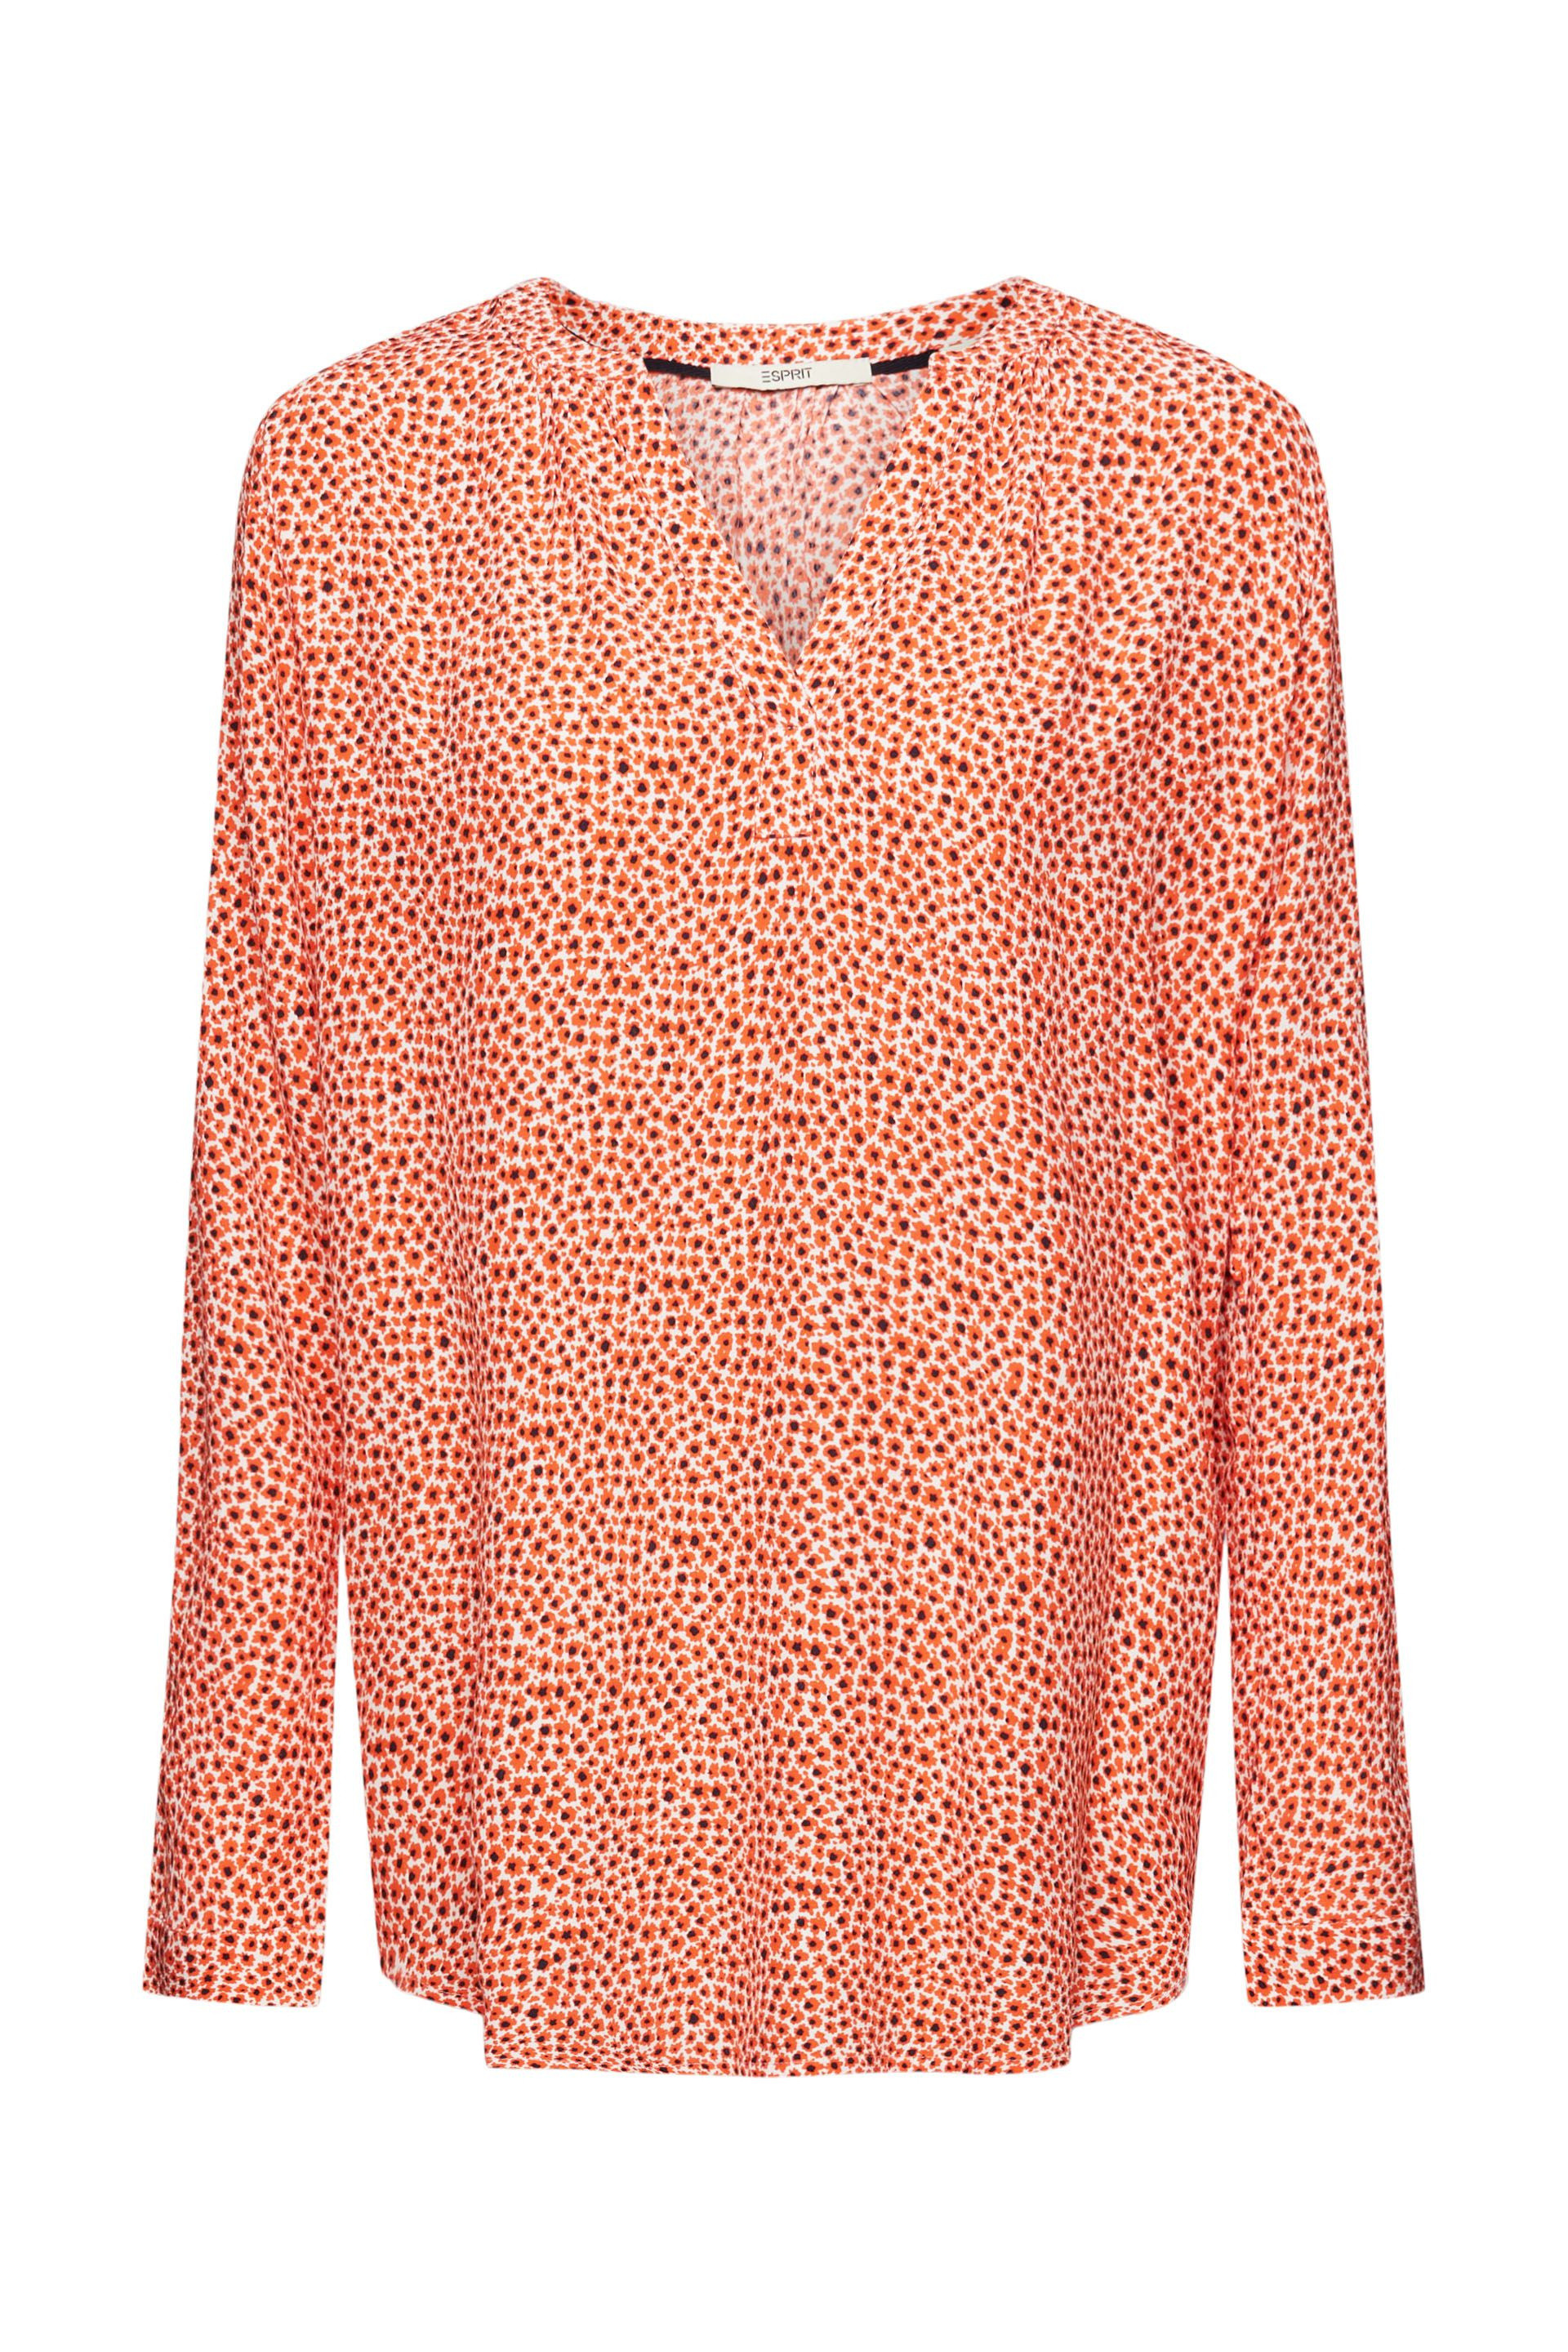 Esprit - Floral V-neck shirt, Orange, large image number 0